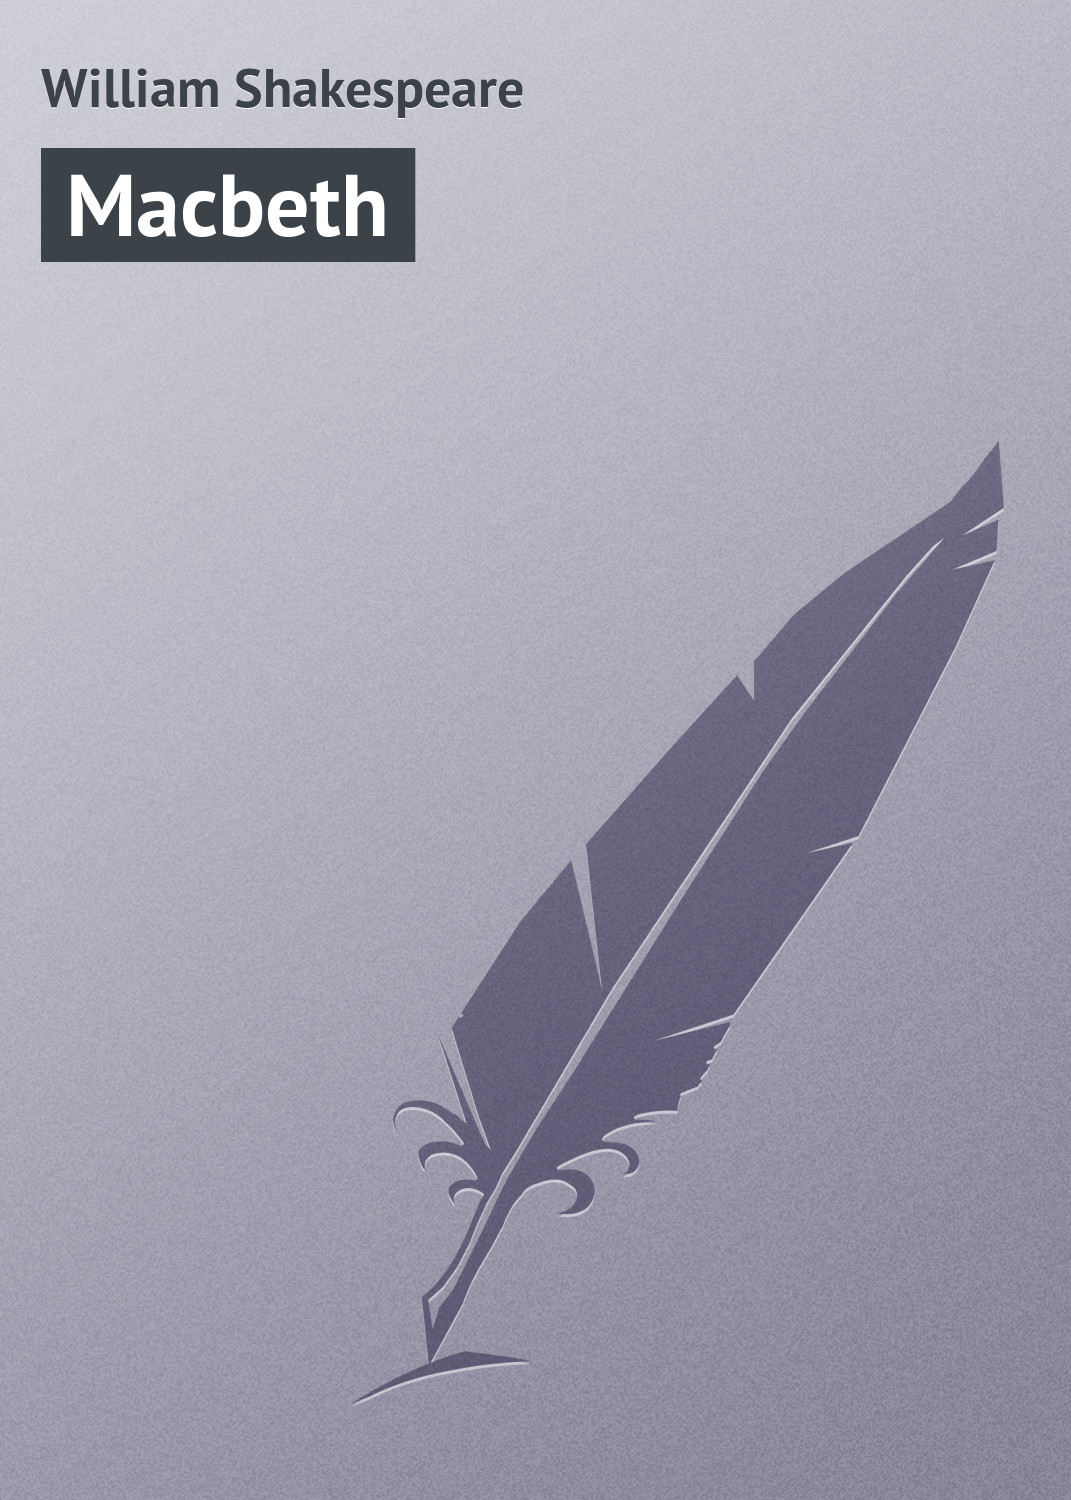 Книга Macbeth из серии , созданная William Shakespeare, может относится к жанру Зарубежная старинная литература, Зарубежная классика. Стоимость электронной книги Macbeth с идентификатором 21103606 составляет 5.99 руб.